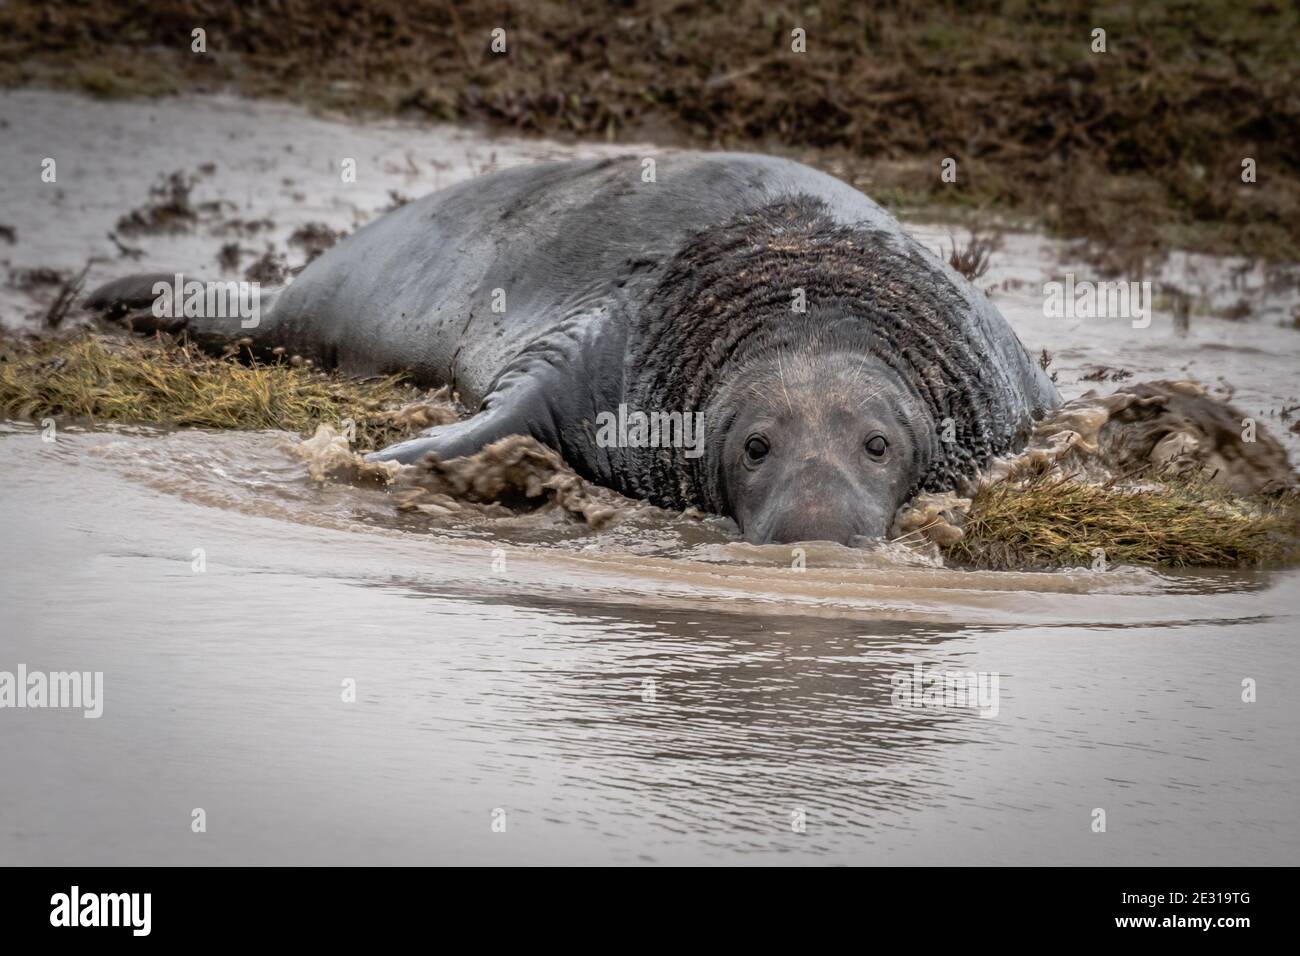 Eine Nahaufnahme eines großen graugrauen Robbenbullen, der im Wasser spritzt. Vorsichtig starrt er nach vorne und blickt direkt auf die Kamera Stockfoto